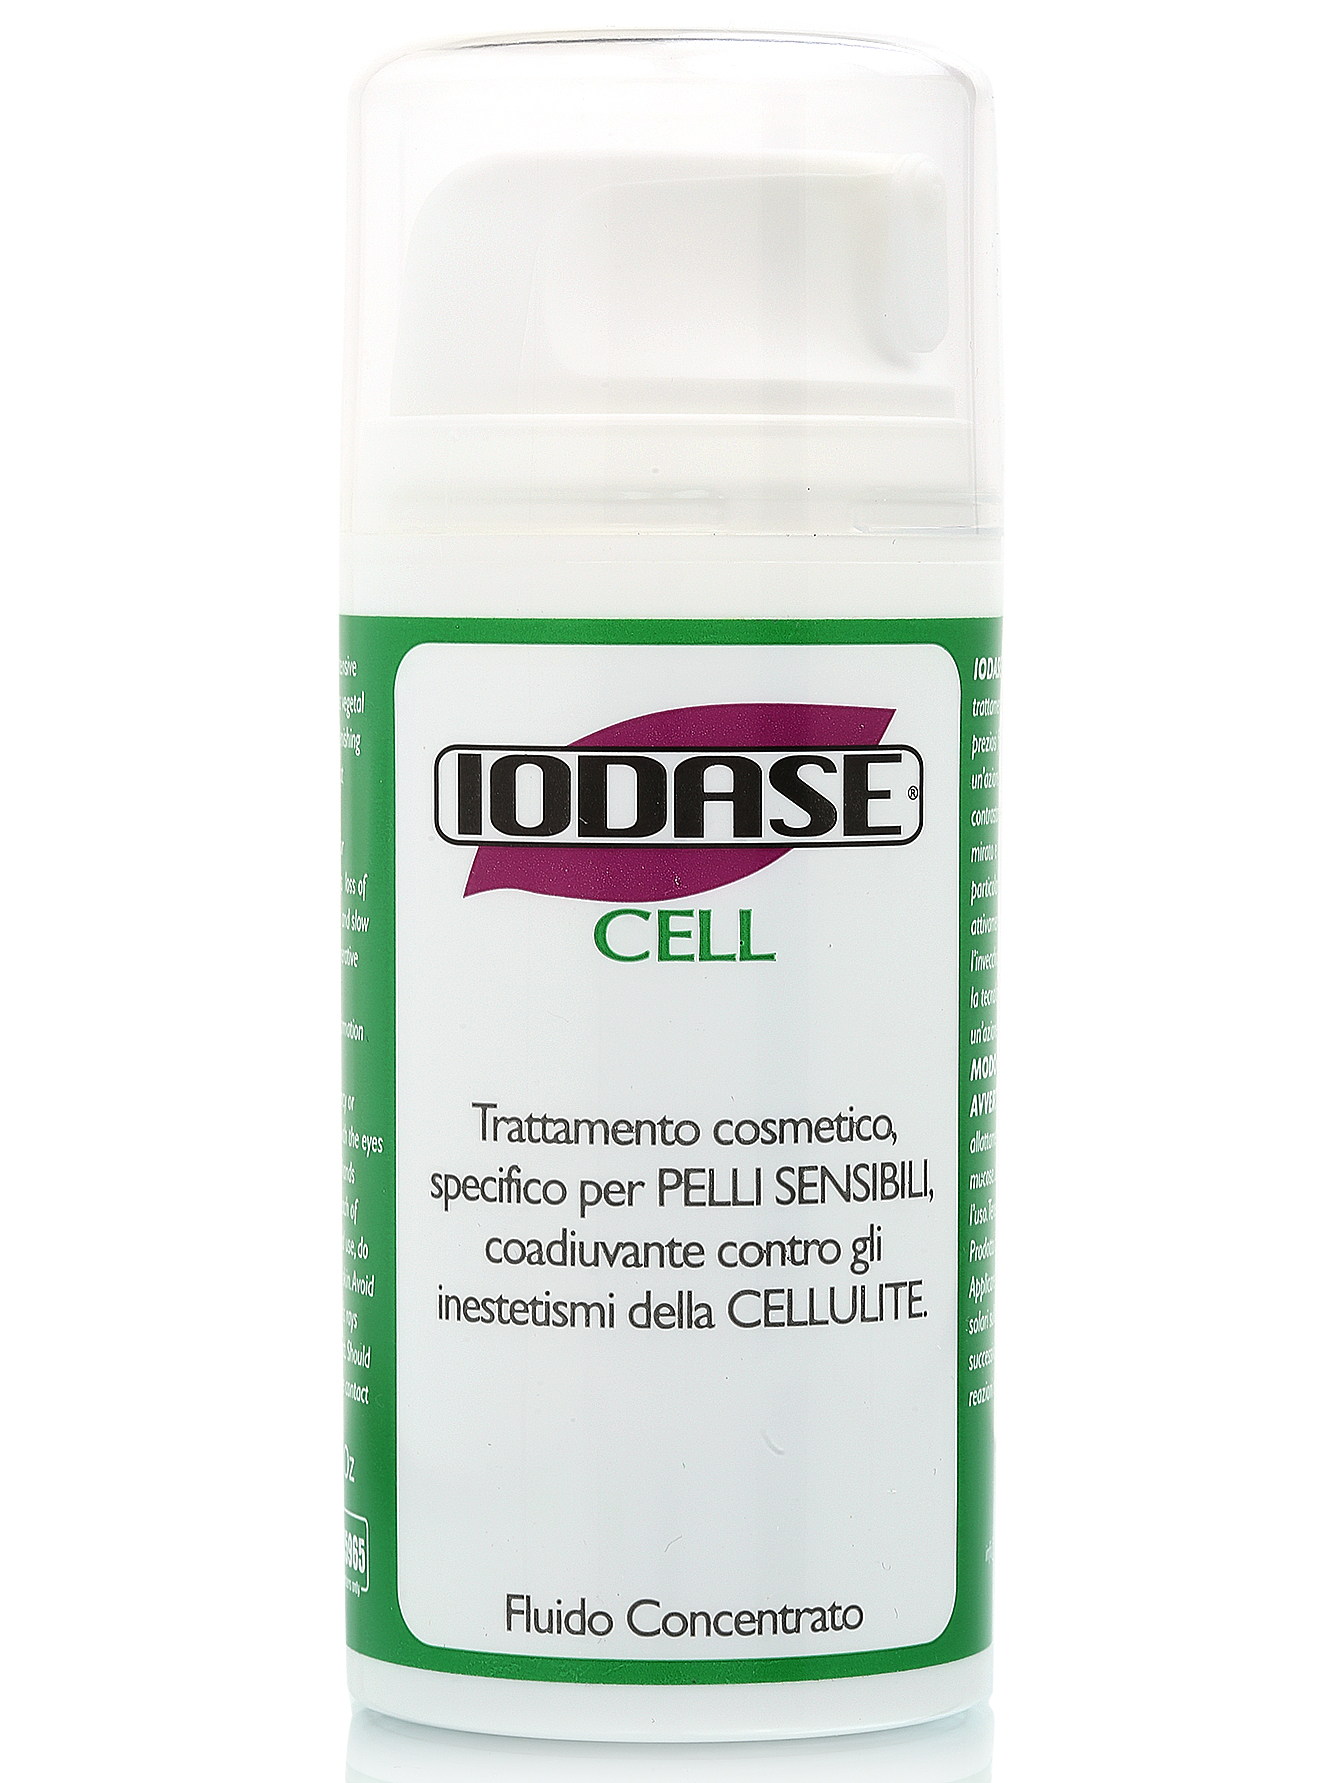  Сыворотка для тела "Iodase CELL" - Body Care, 100ml - Общий вид